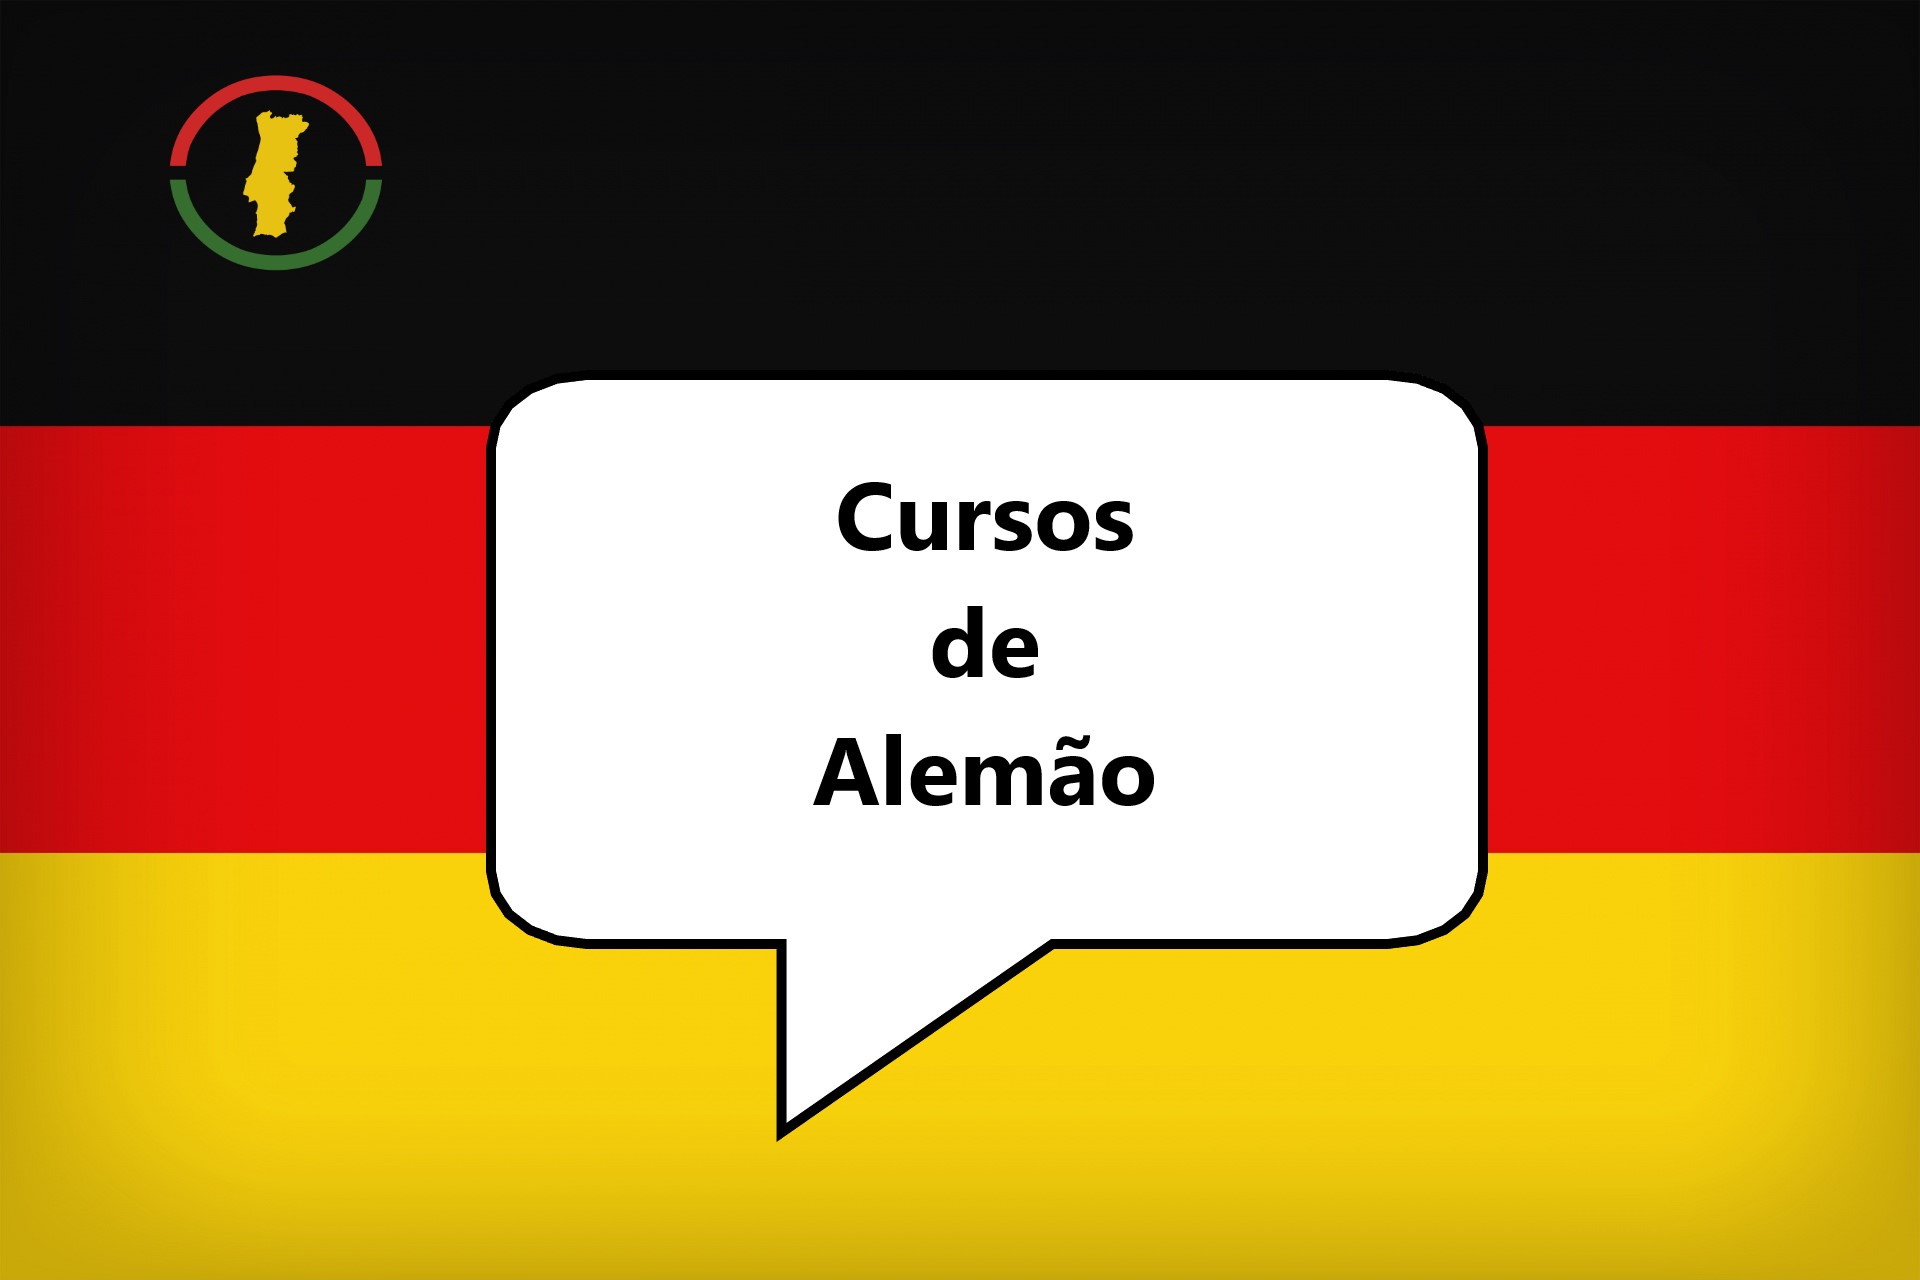 curso-alemão-suiça-portugueses.jpg